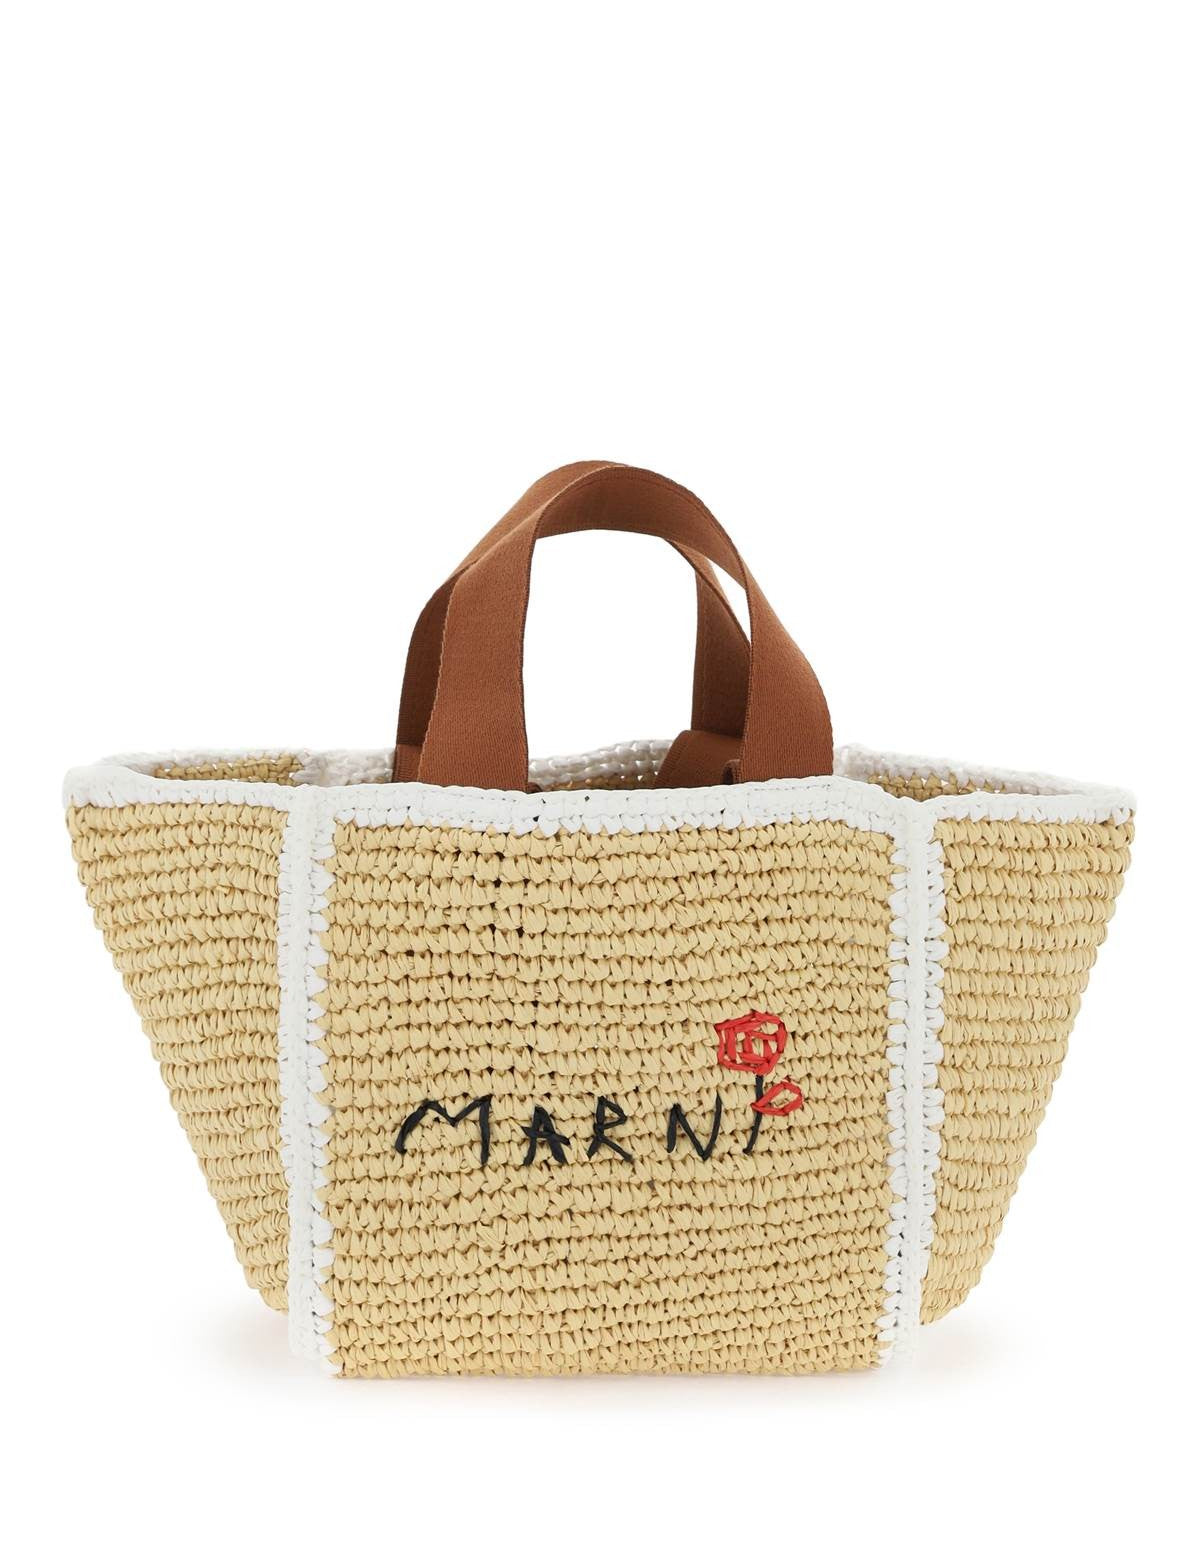 marni-sillo-tote-bag-for_07122bb4-8d43-4530-b48f-8c09f9c42a2c.jpg